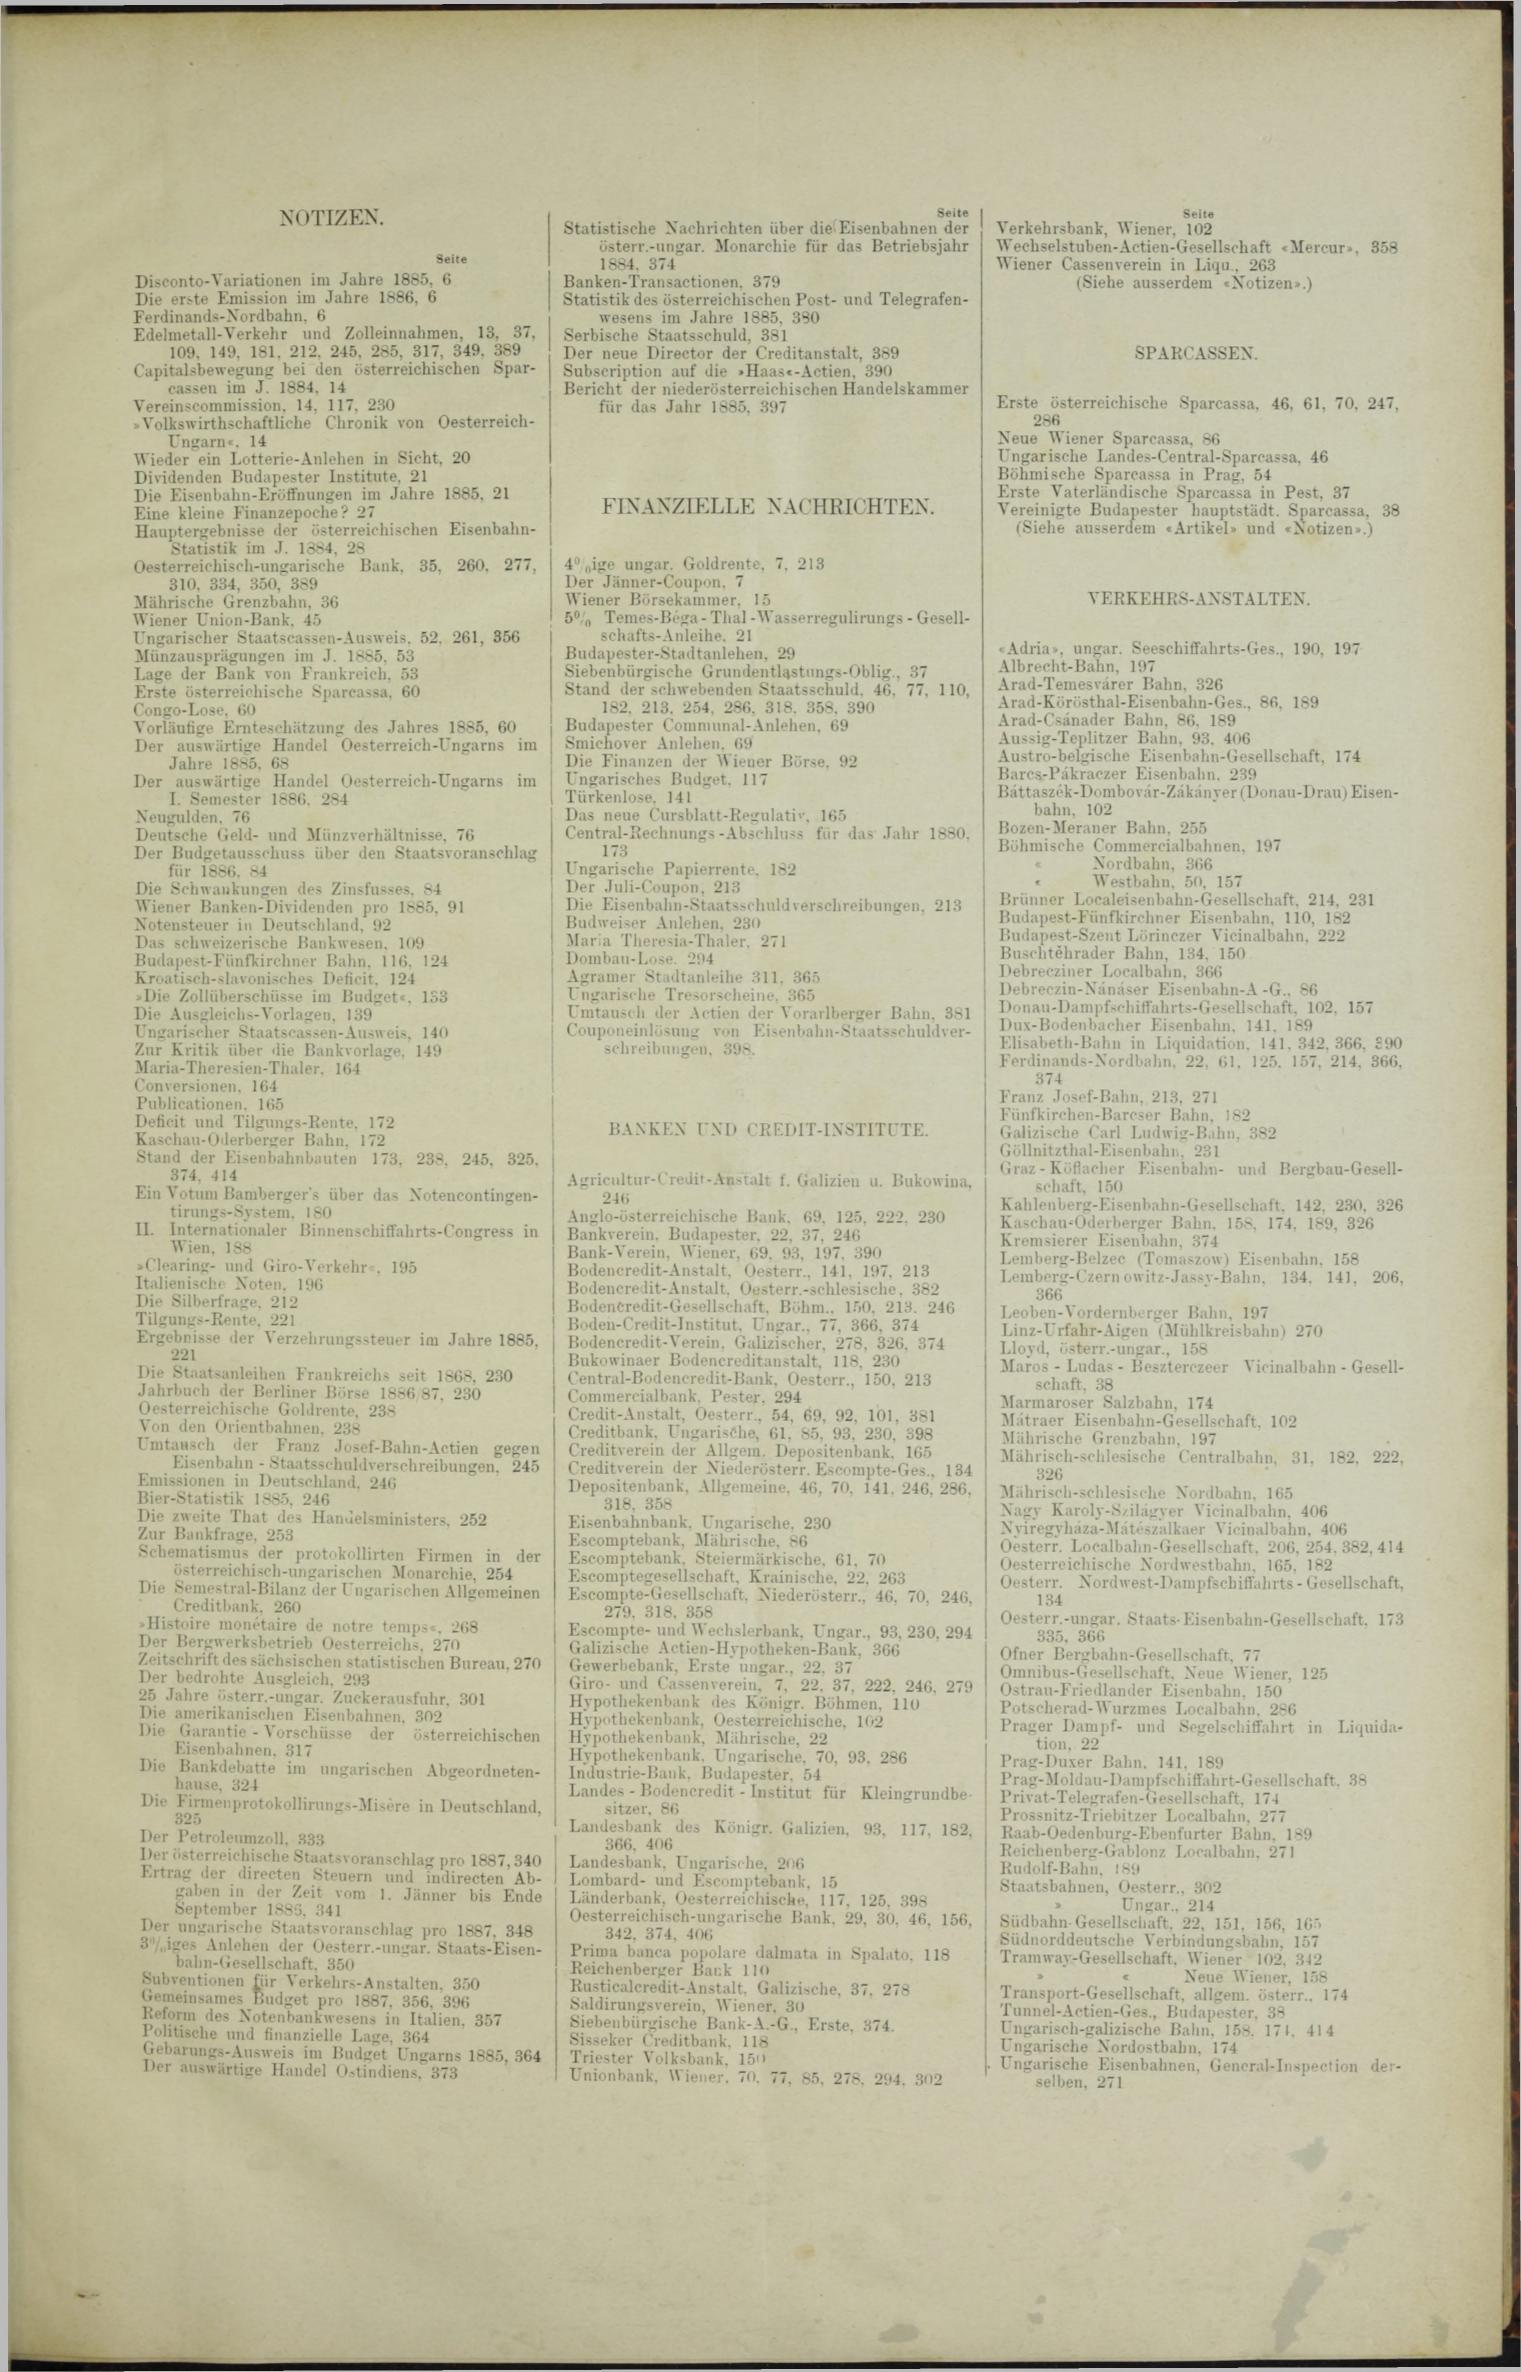 Der Tresor 19.08.1886 - Seite 11